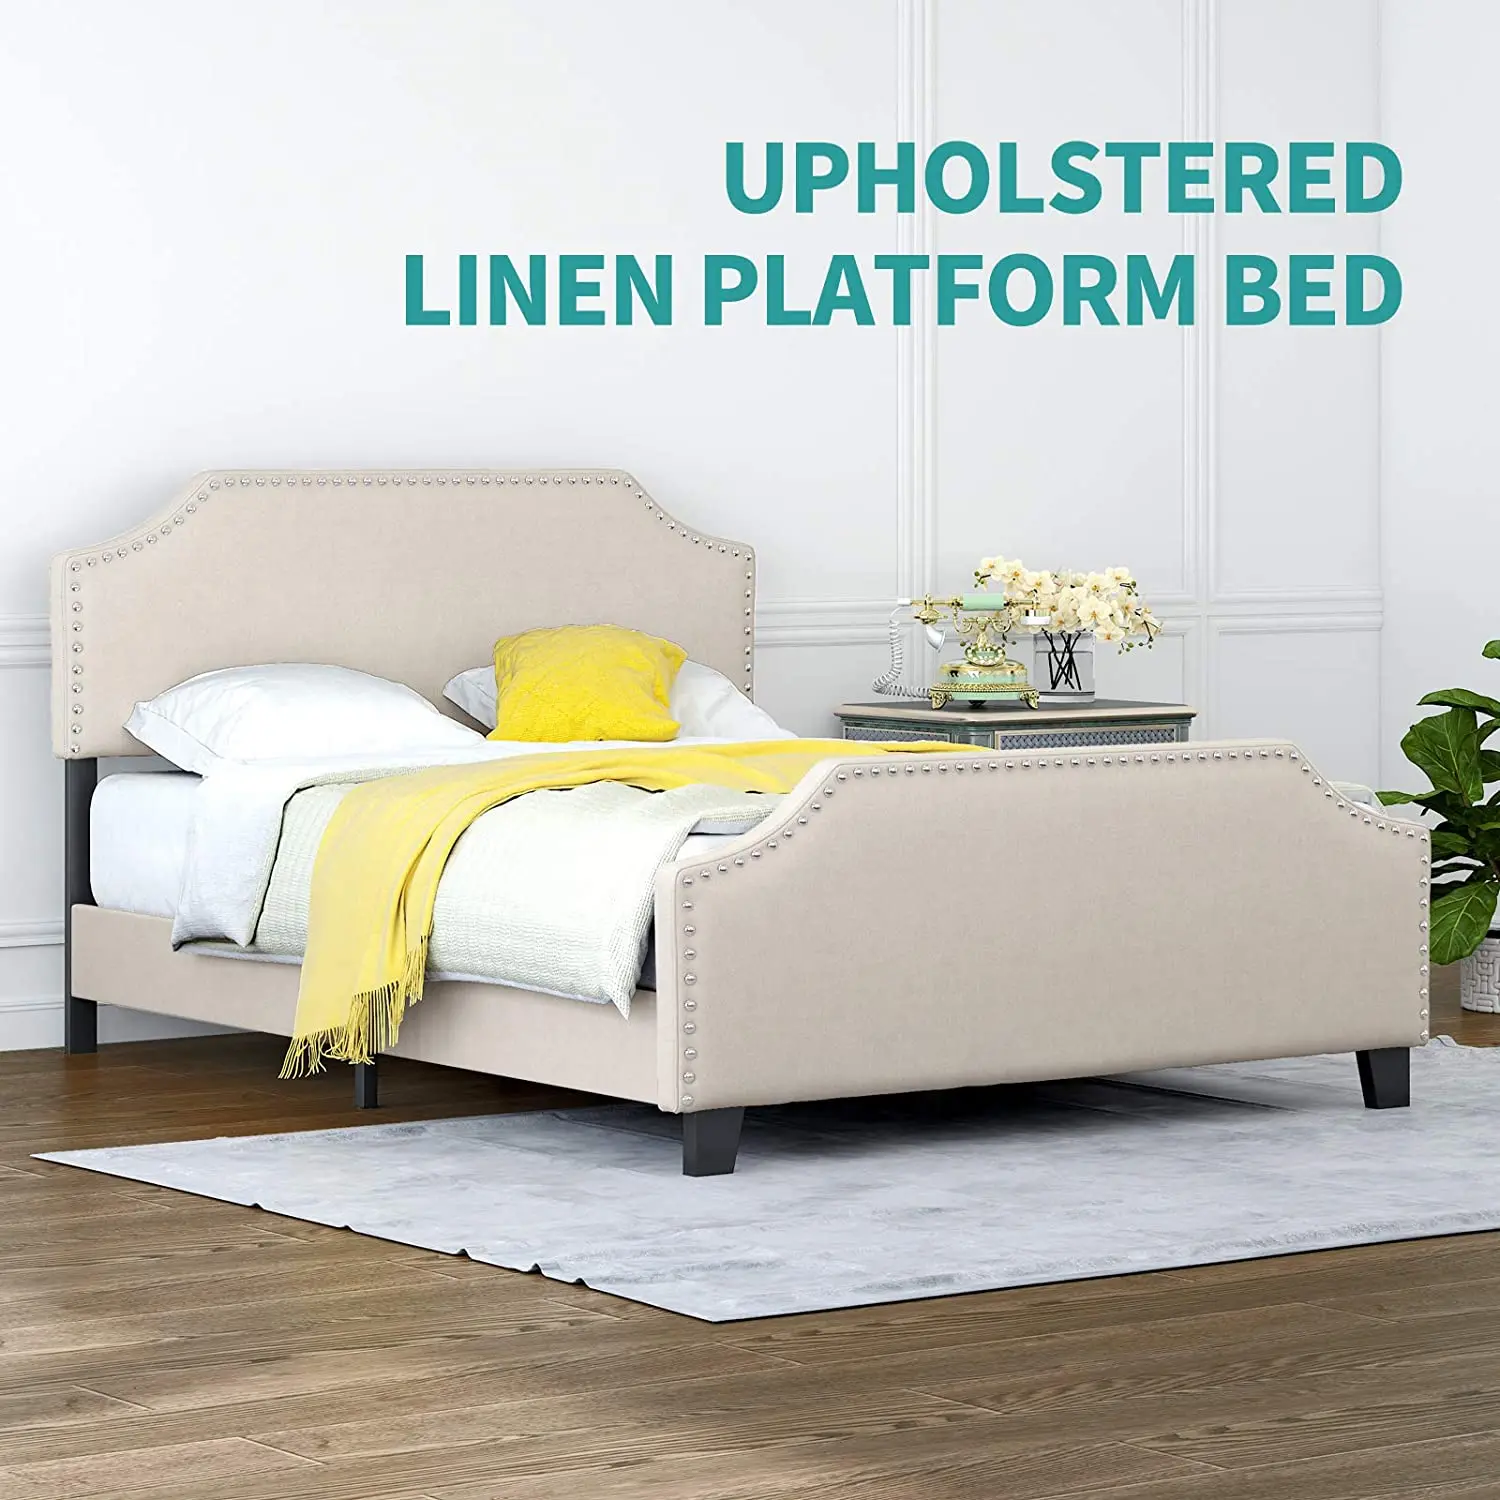 Full Upholstered Linen Platform Bed W/Curved Shape Headboard&Footboard Metal Frame Strong Wood Slat Support Height Adjustable